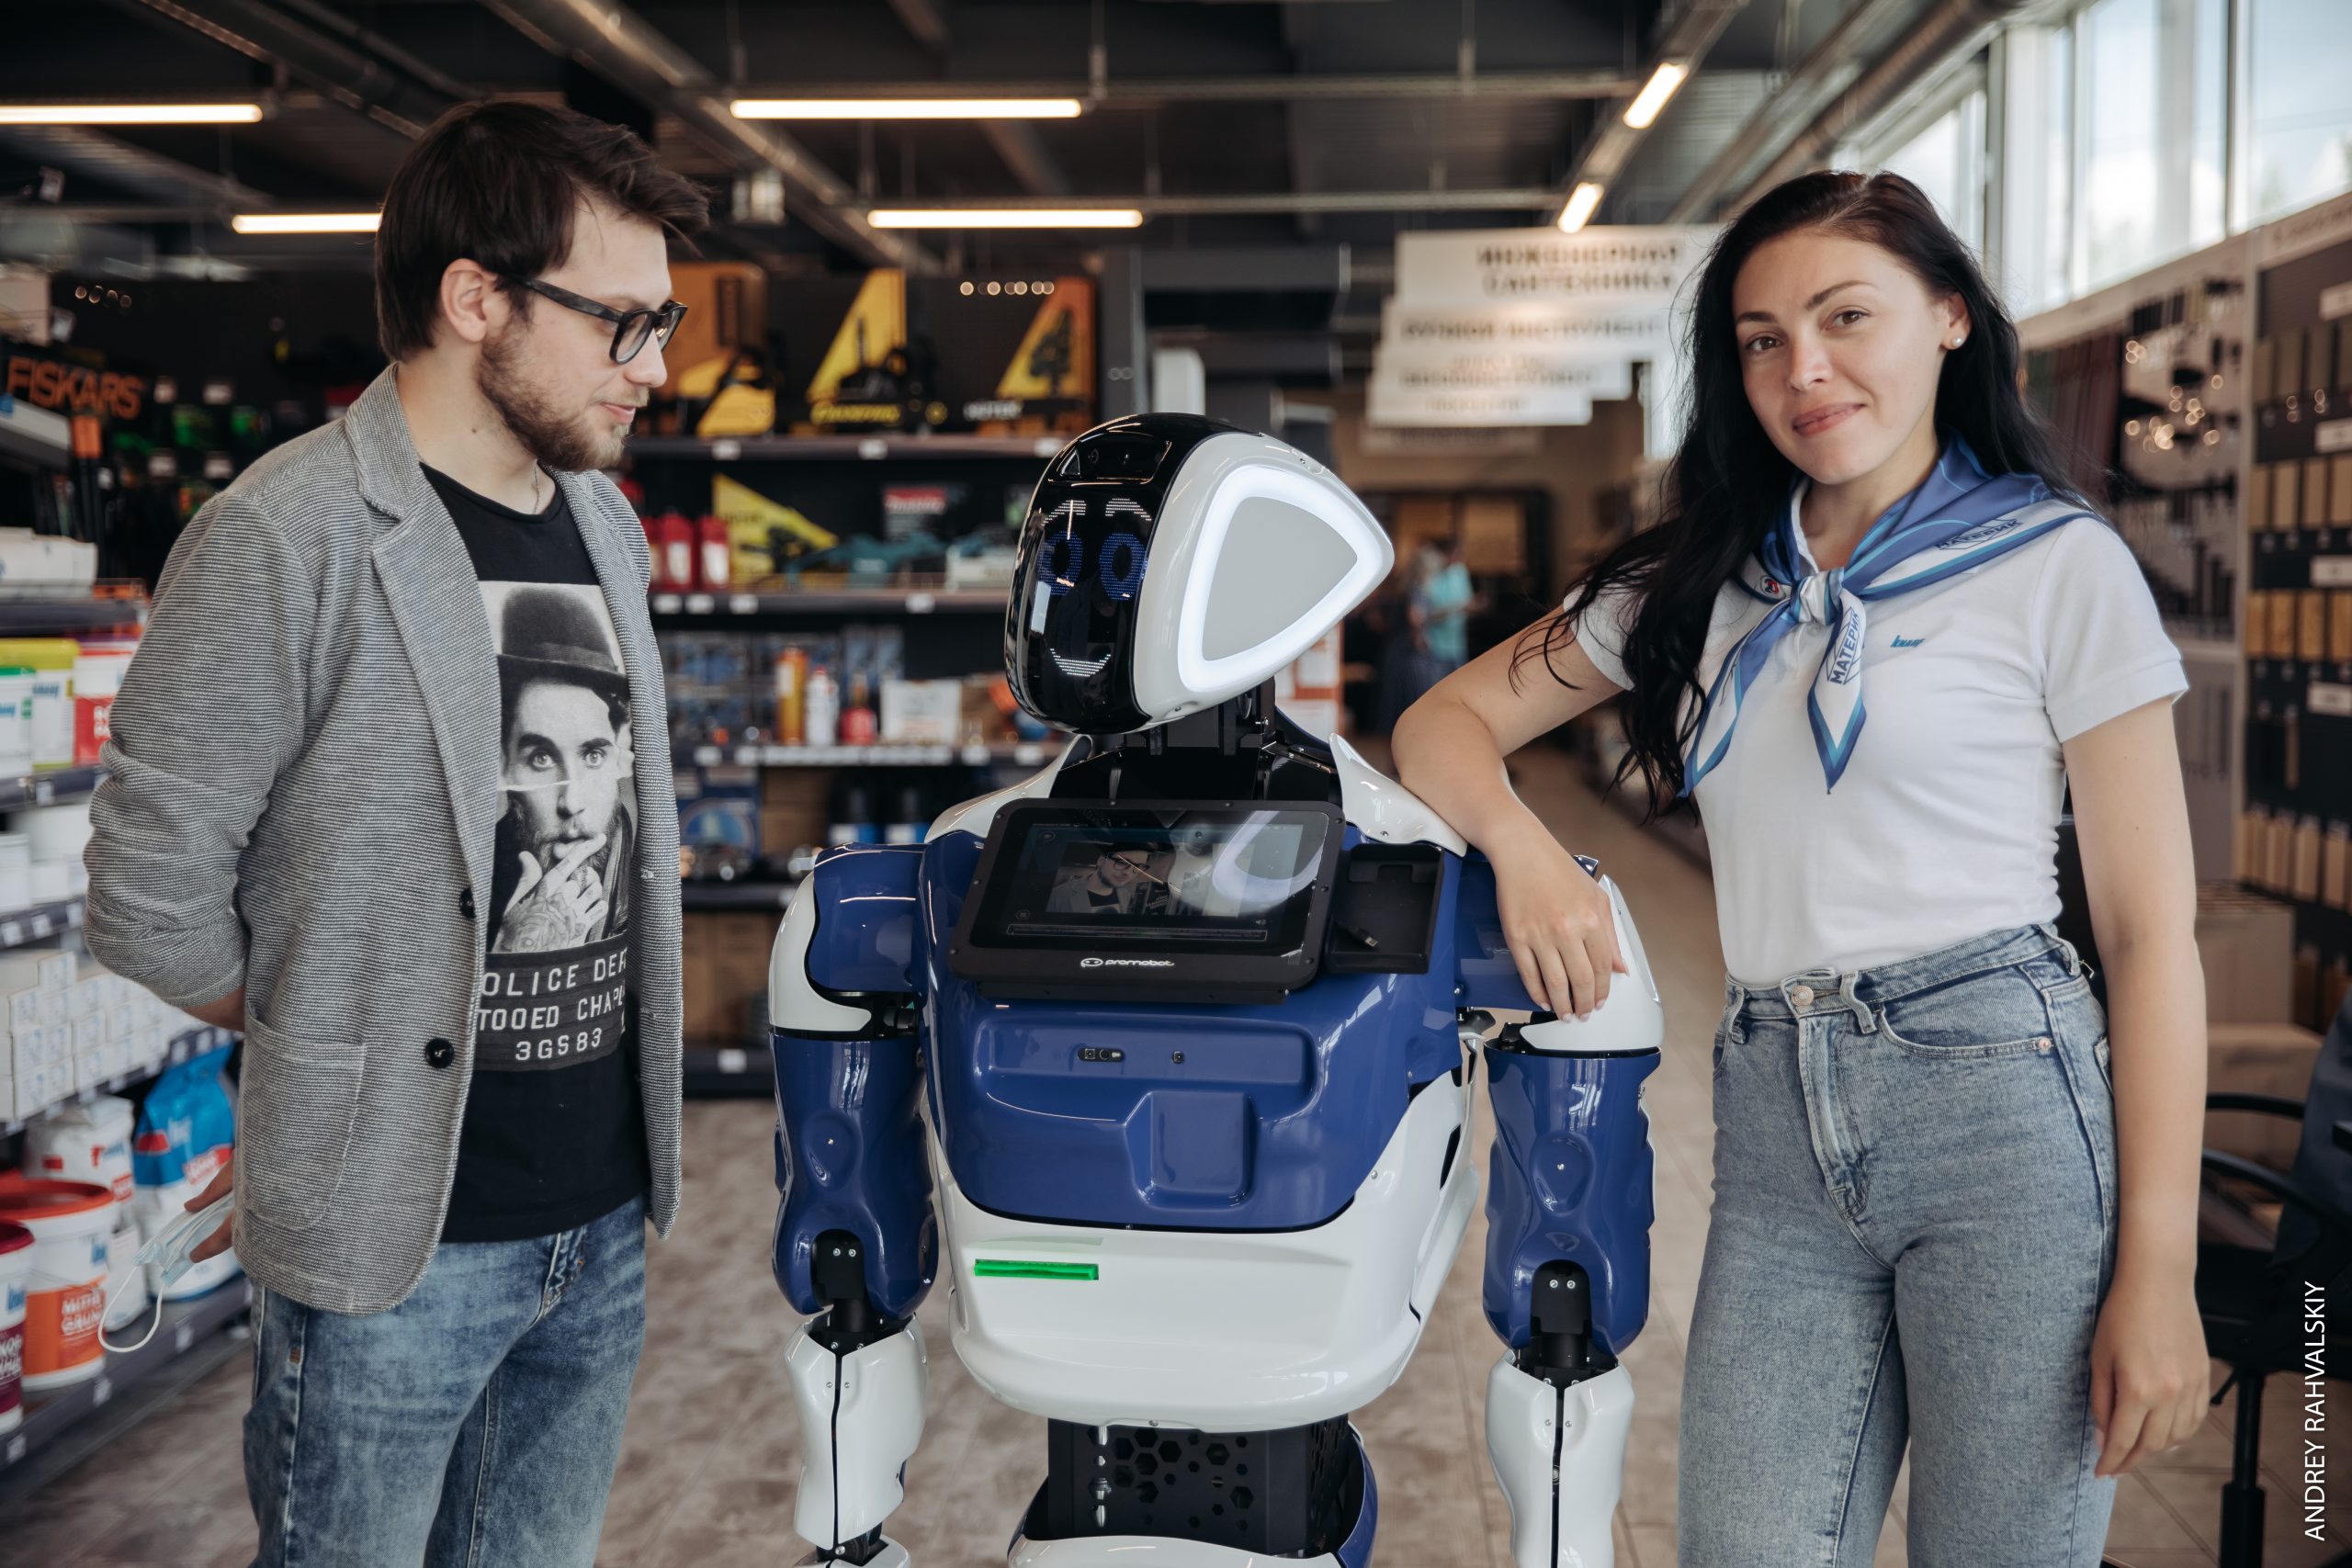 Робот промобот с мужчиной и женщиной среди полок строительного магазина